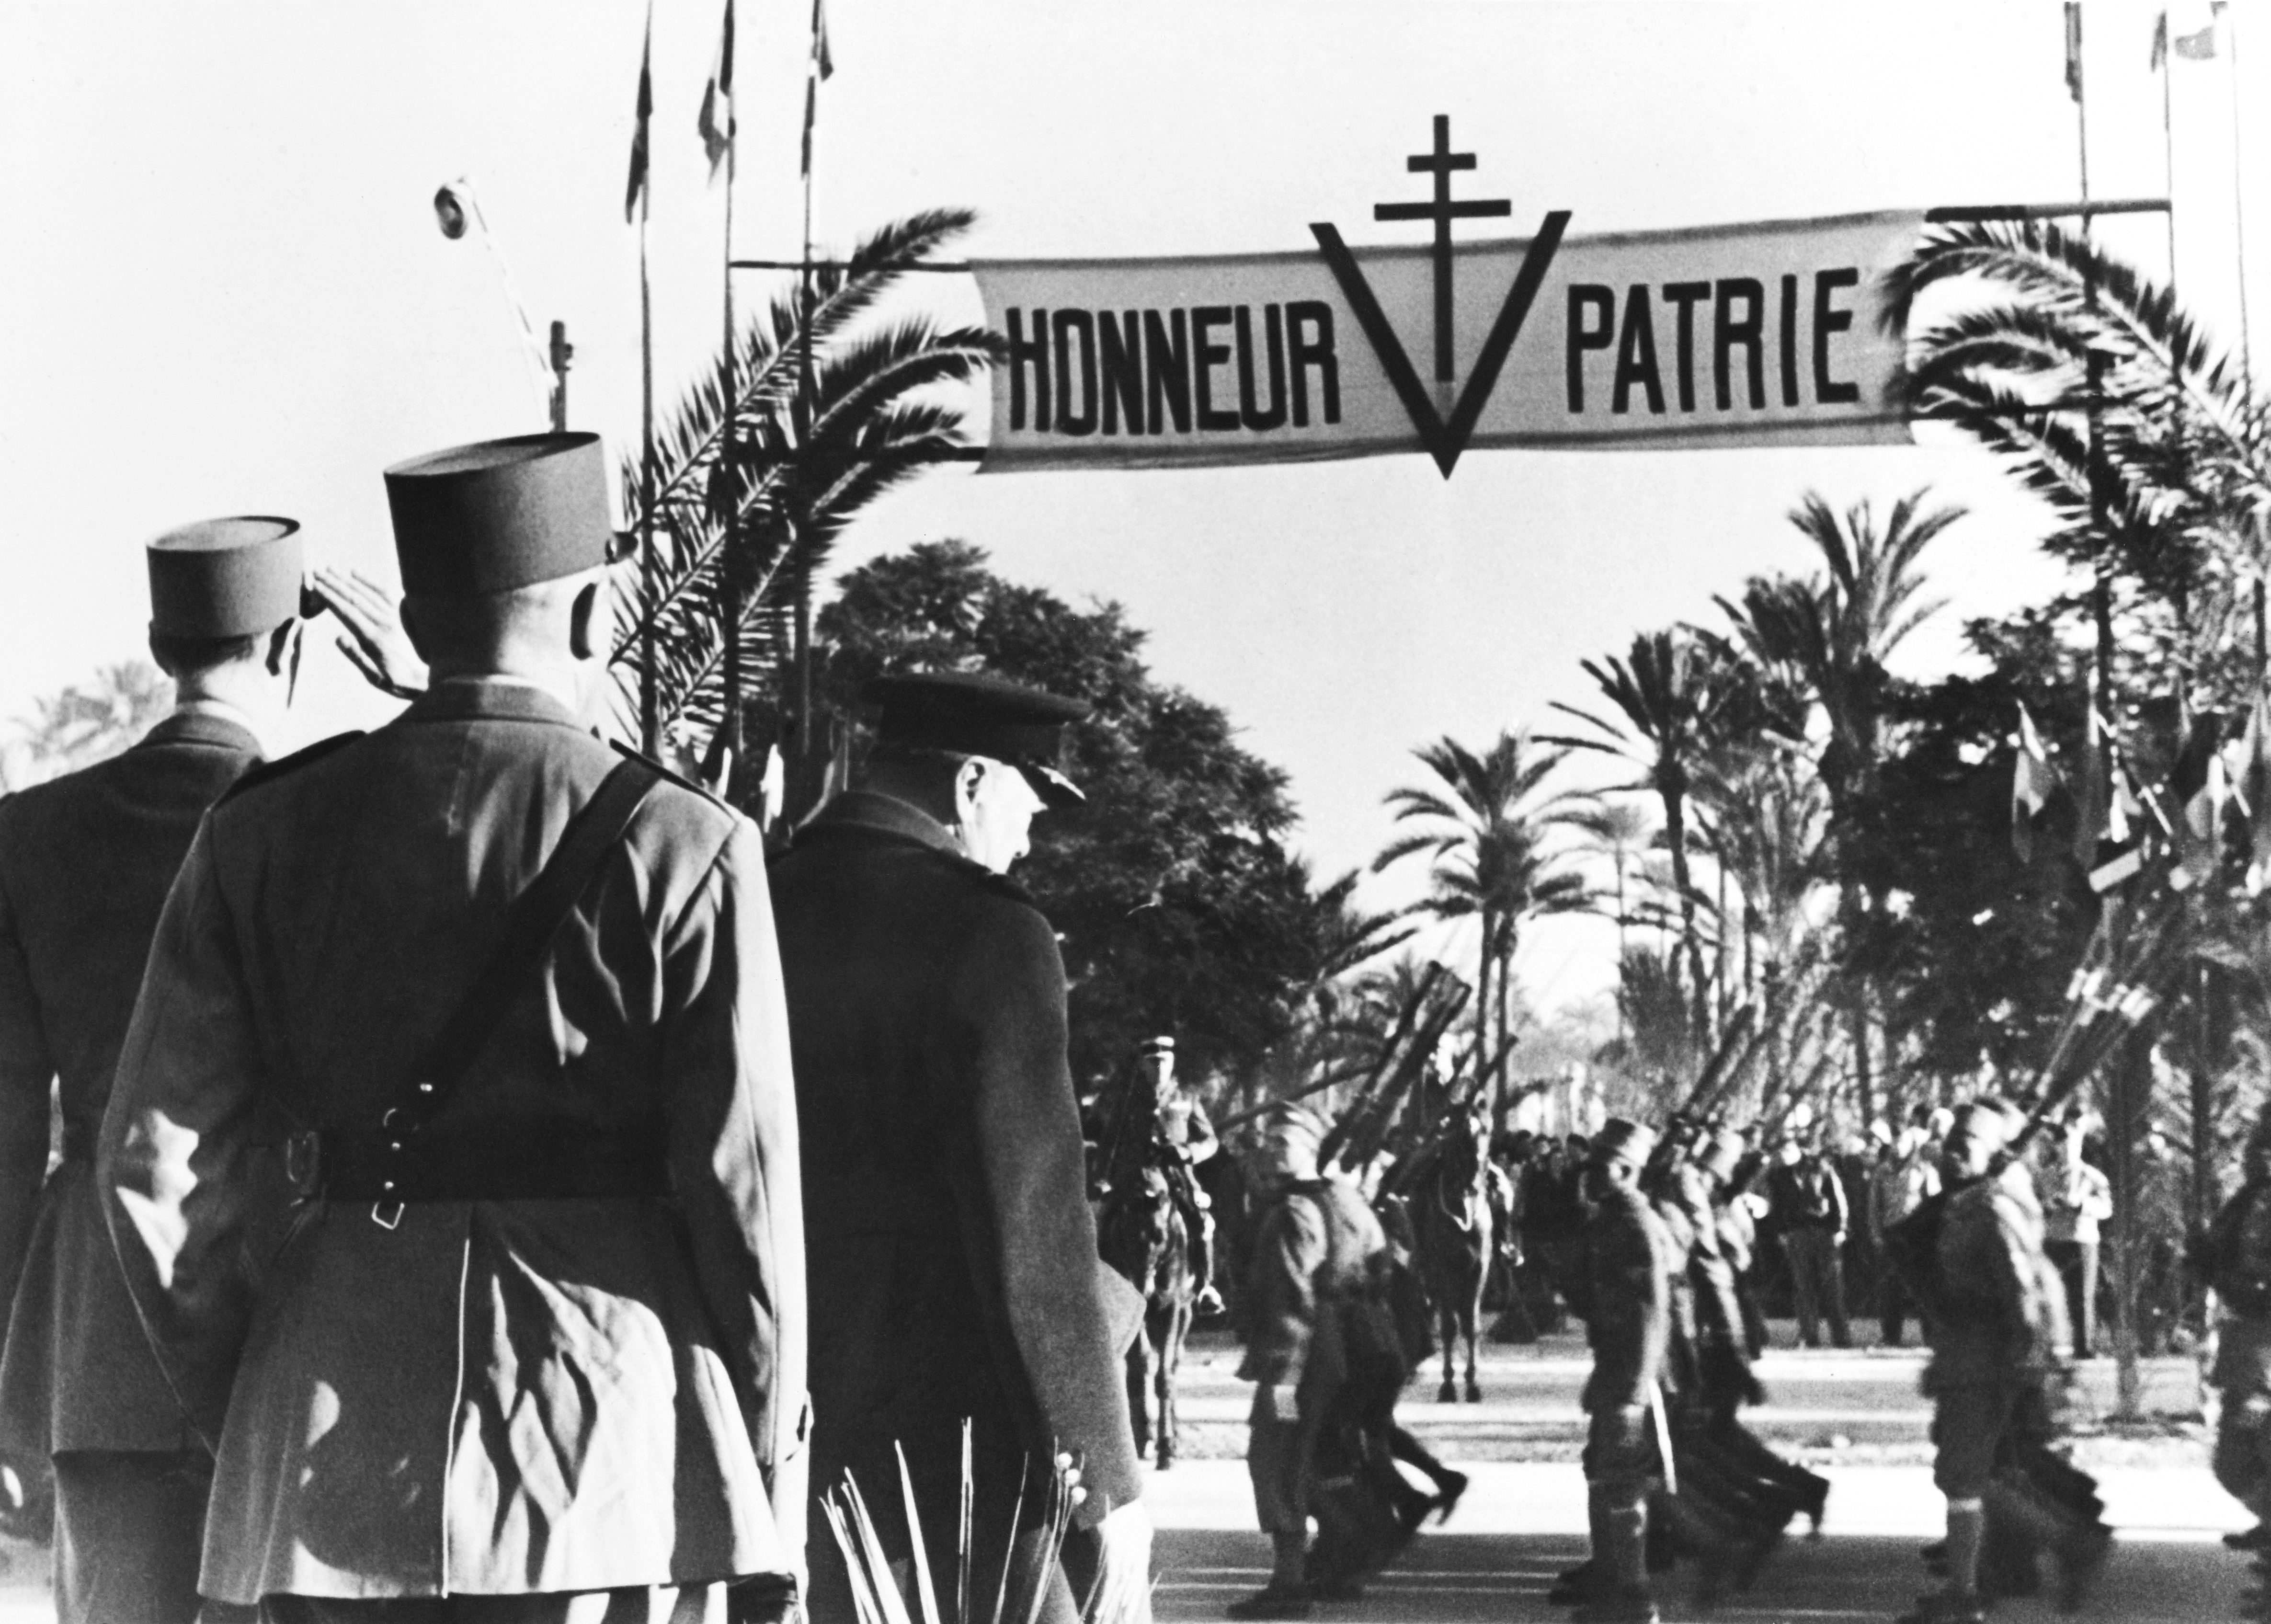 De Gaulle y Churchill ven desfilar las tropas francesas en Marraquech (Marruecos), en enero de 1944.